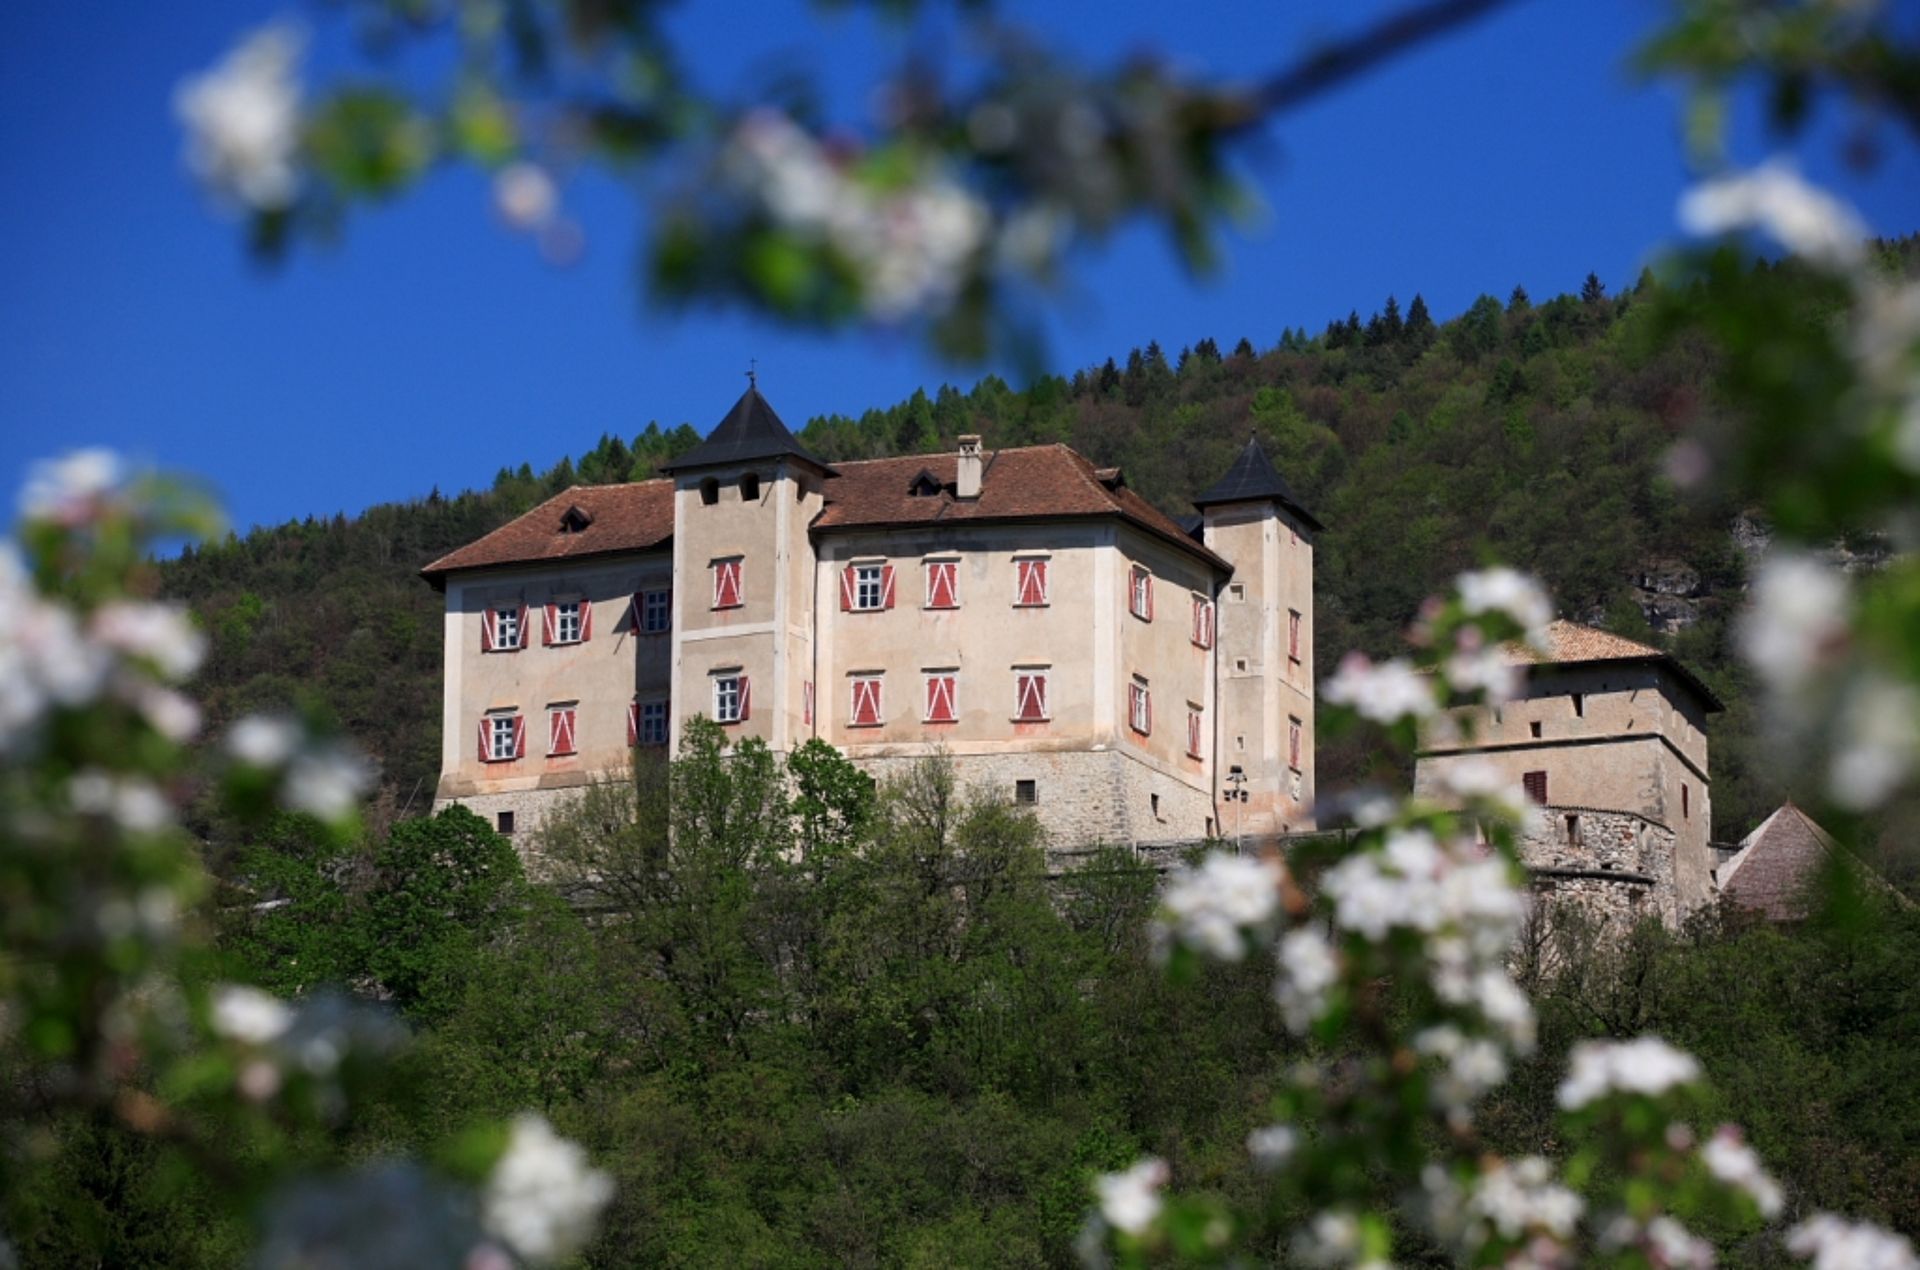 Castel Thun während der Apfelblüte